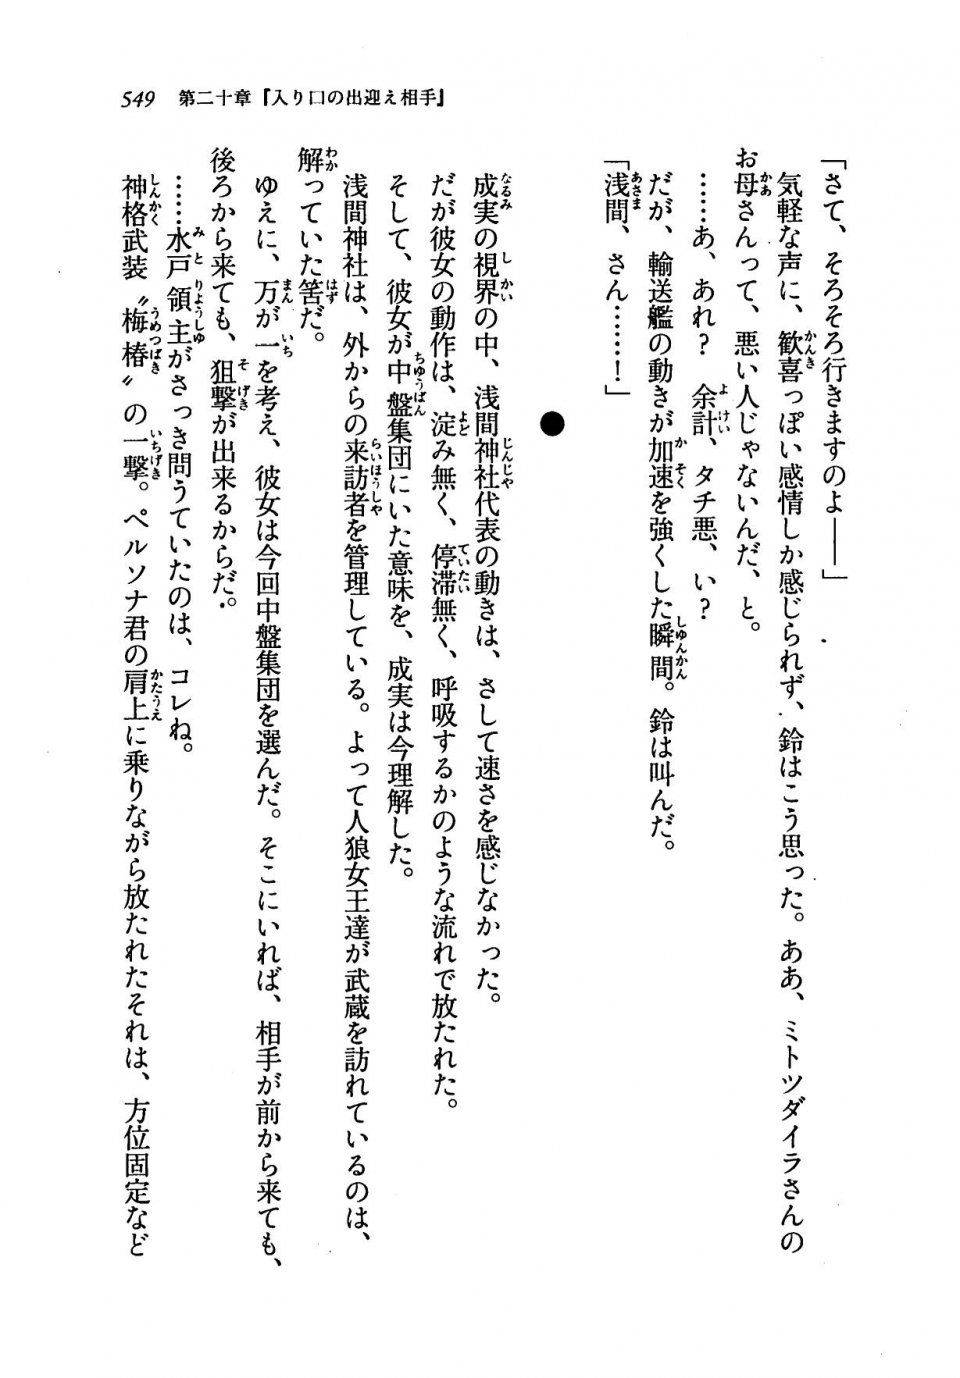 Kyoukai Senjou no Horizon LN Vol 19(8A) - Photo #549